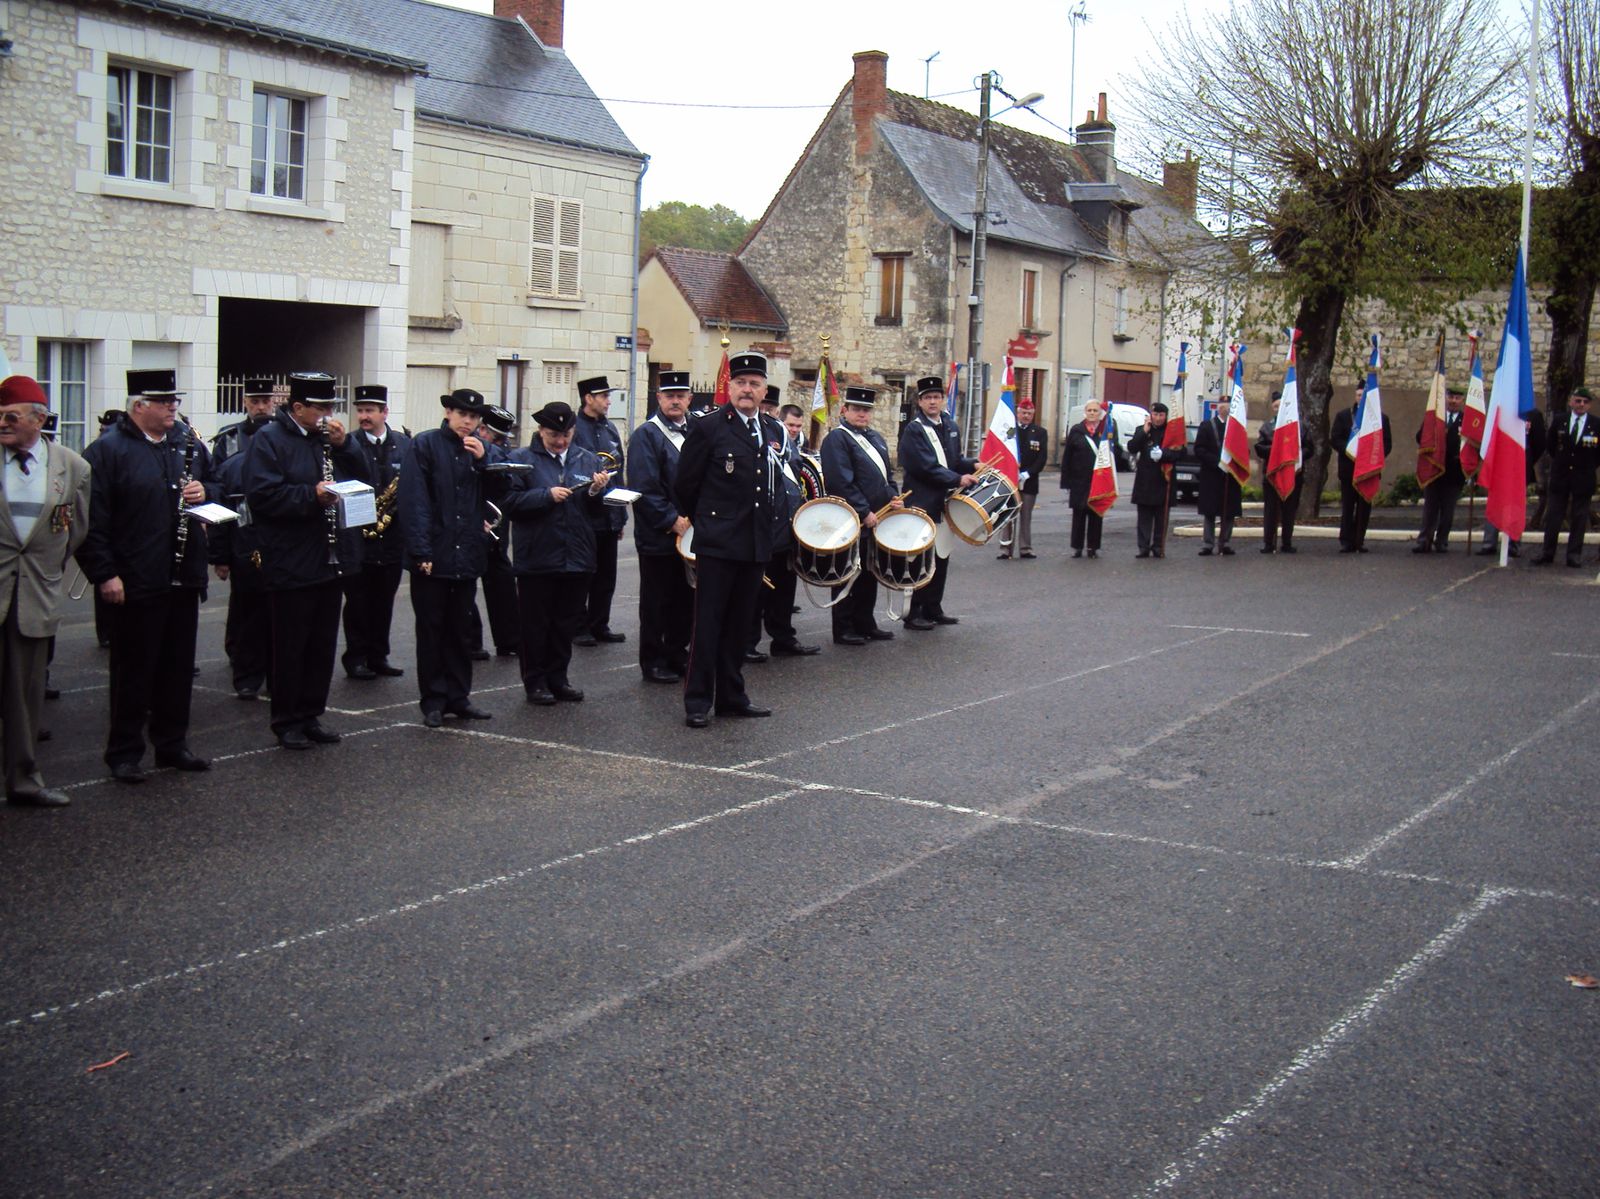 La commémoration du 149ème anniversaire du combat de Camerone s’est déroulée à Sainte-Maure-de-Touraine le 28 avril 2012.